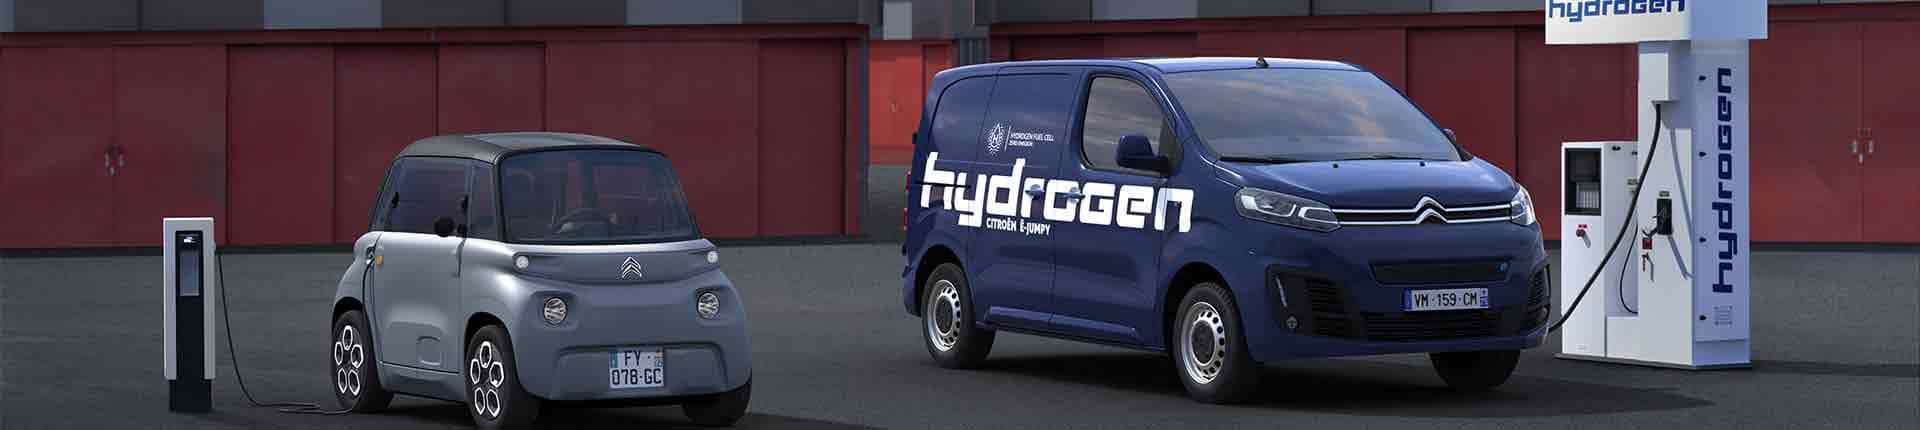 Citroën ami et ë jumpy hydrogen aux bornes de recharges